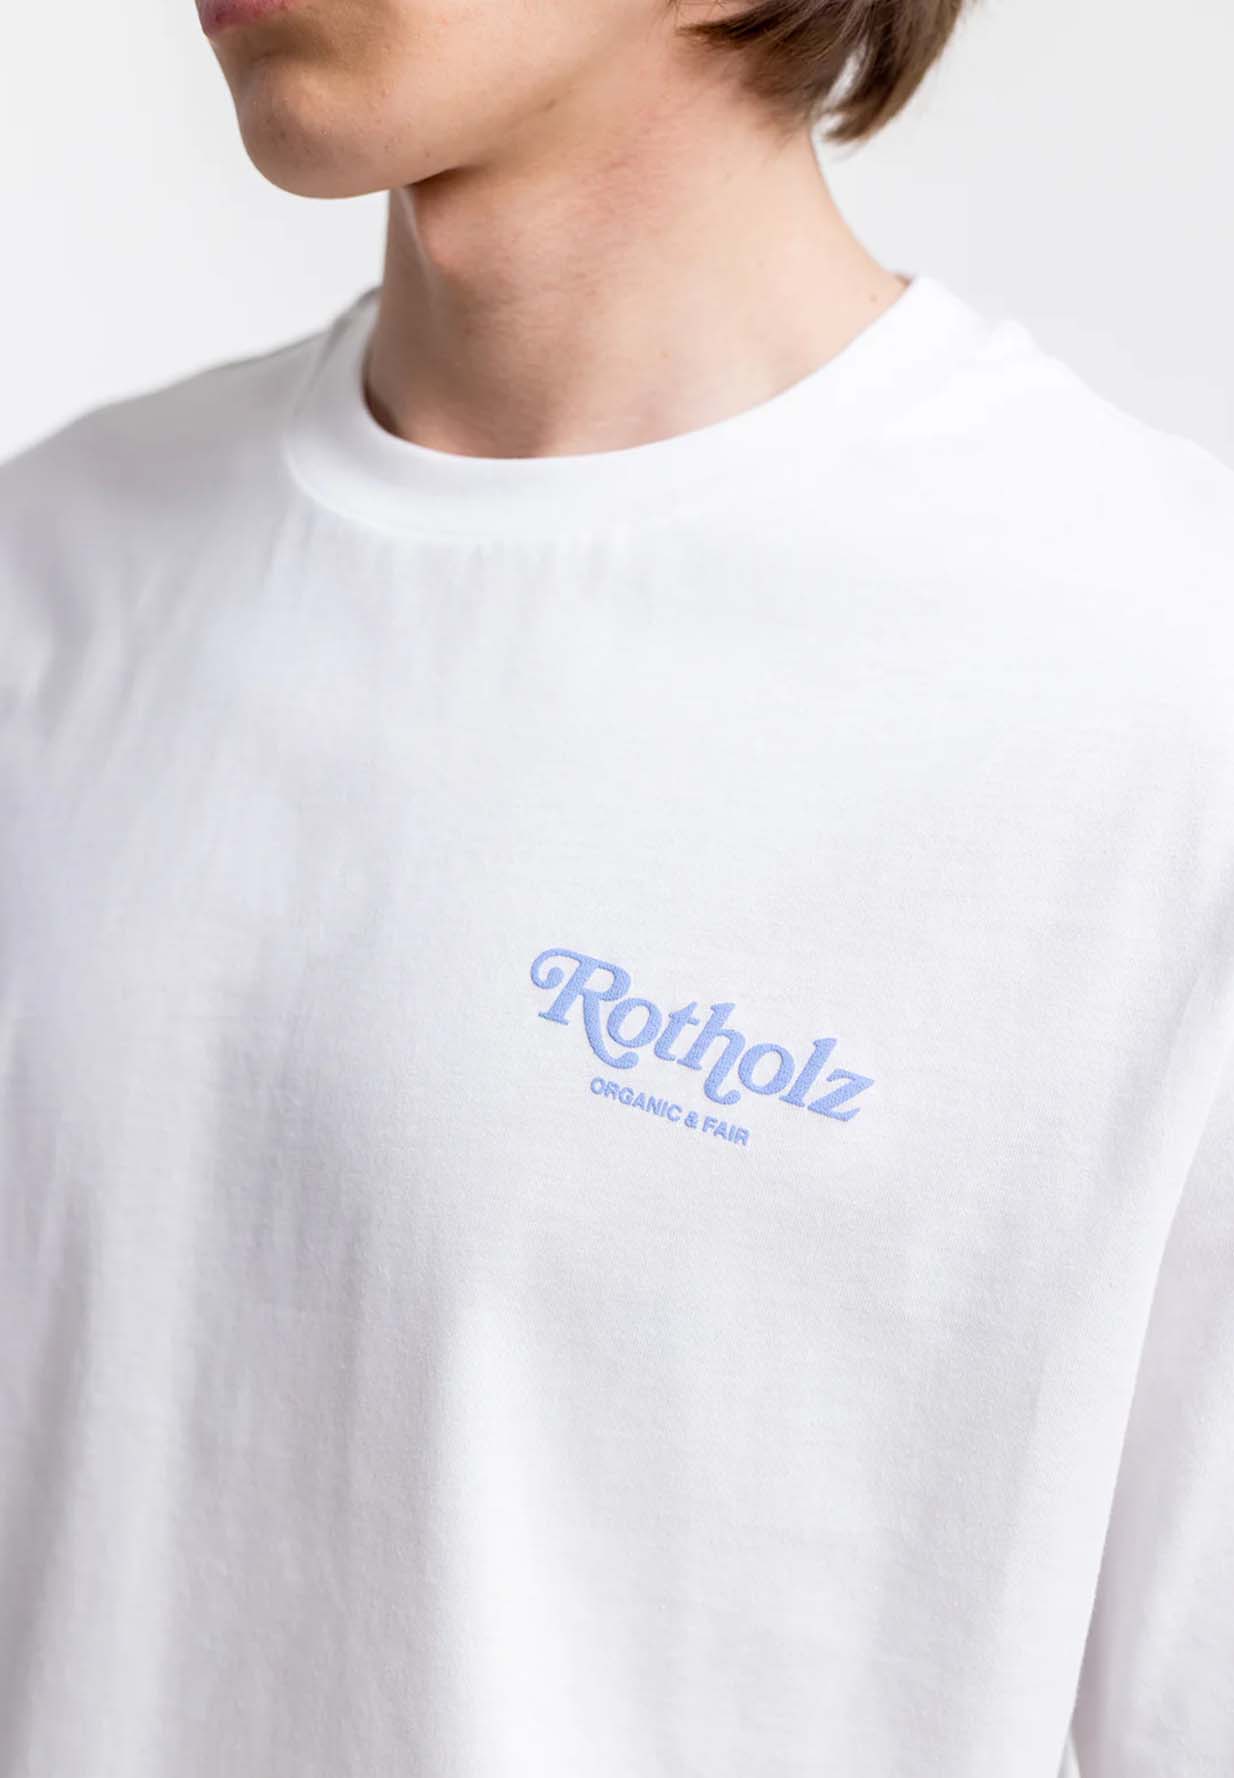 ROTHOLZ Retro Logo T-Shirt white S